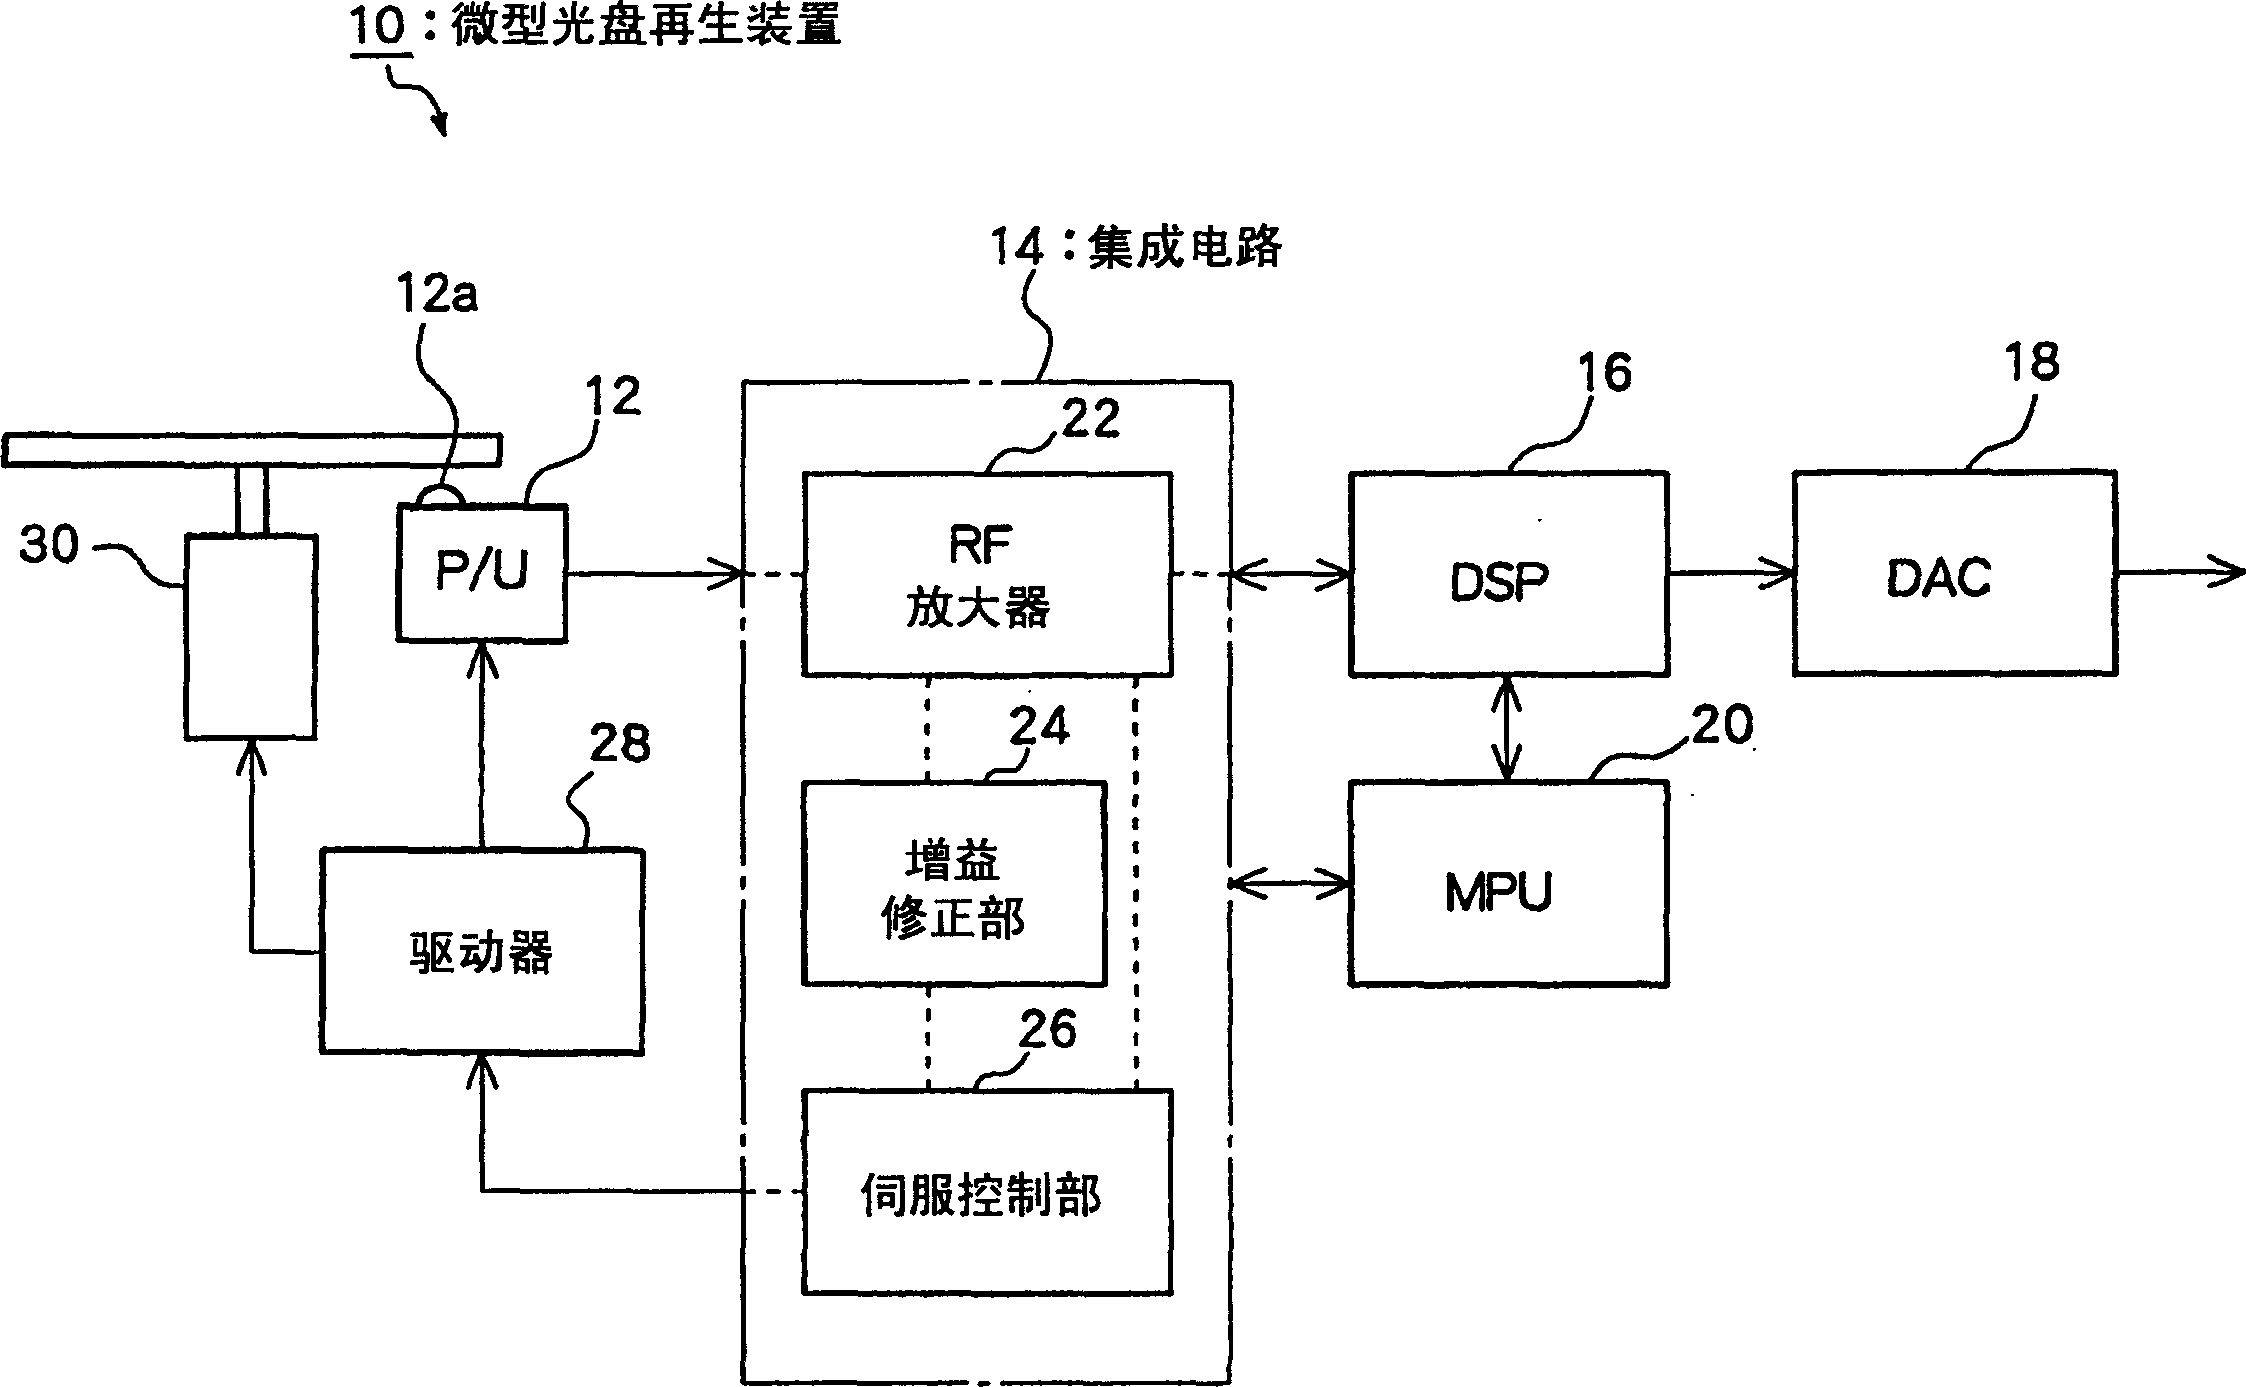 RF circuit for minidisc regeneration apparatus